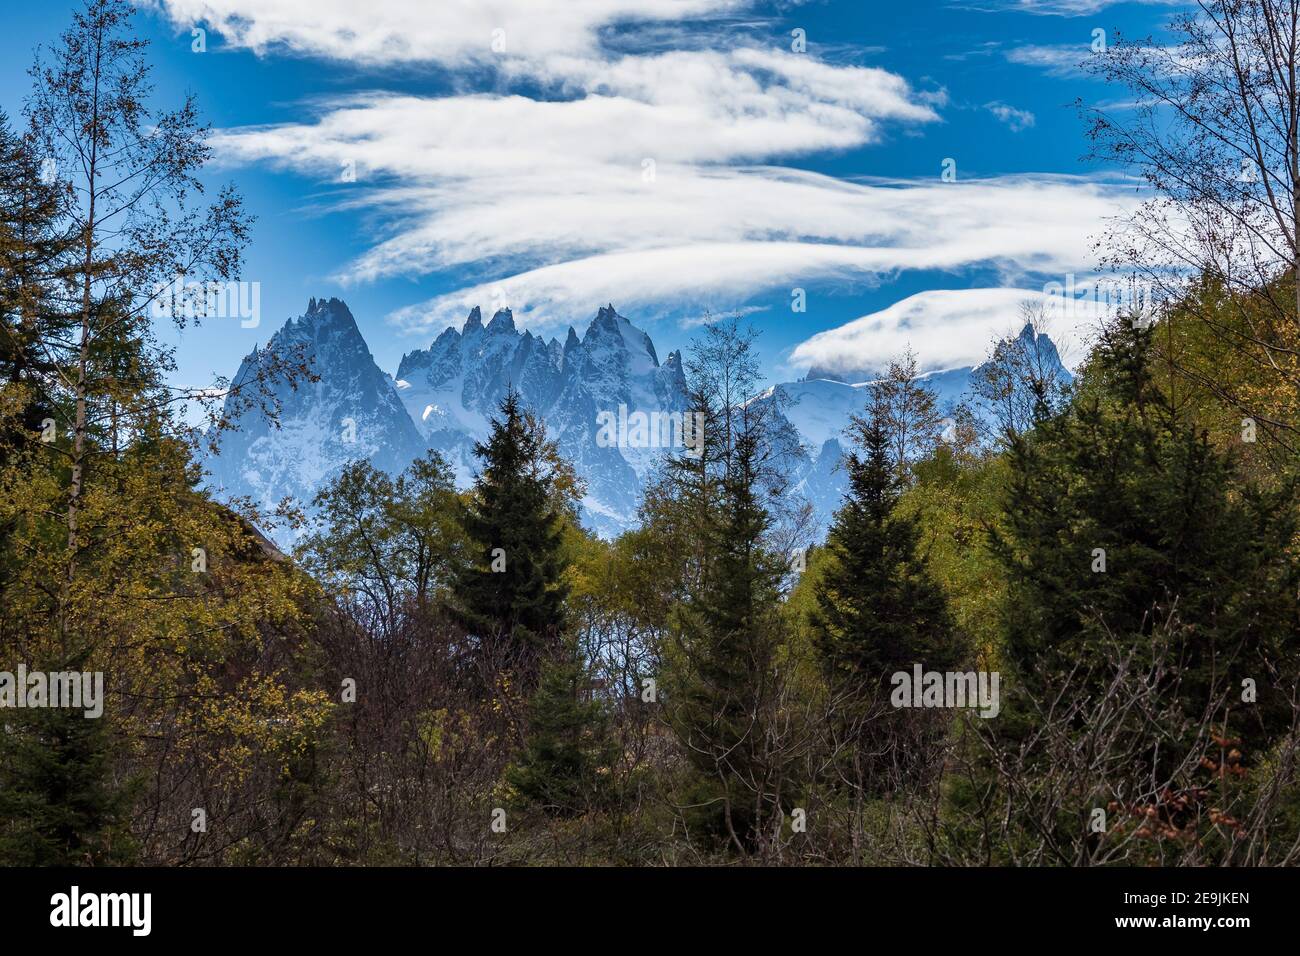 Les hautes montagnes de la haute Savoie en automne. Alpes françaises près de Vallorcine, Chamonix-Mont-blanc en France. Banque D'Images